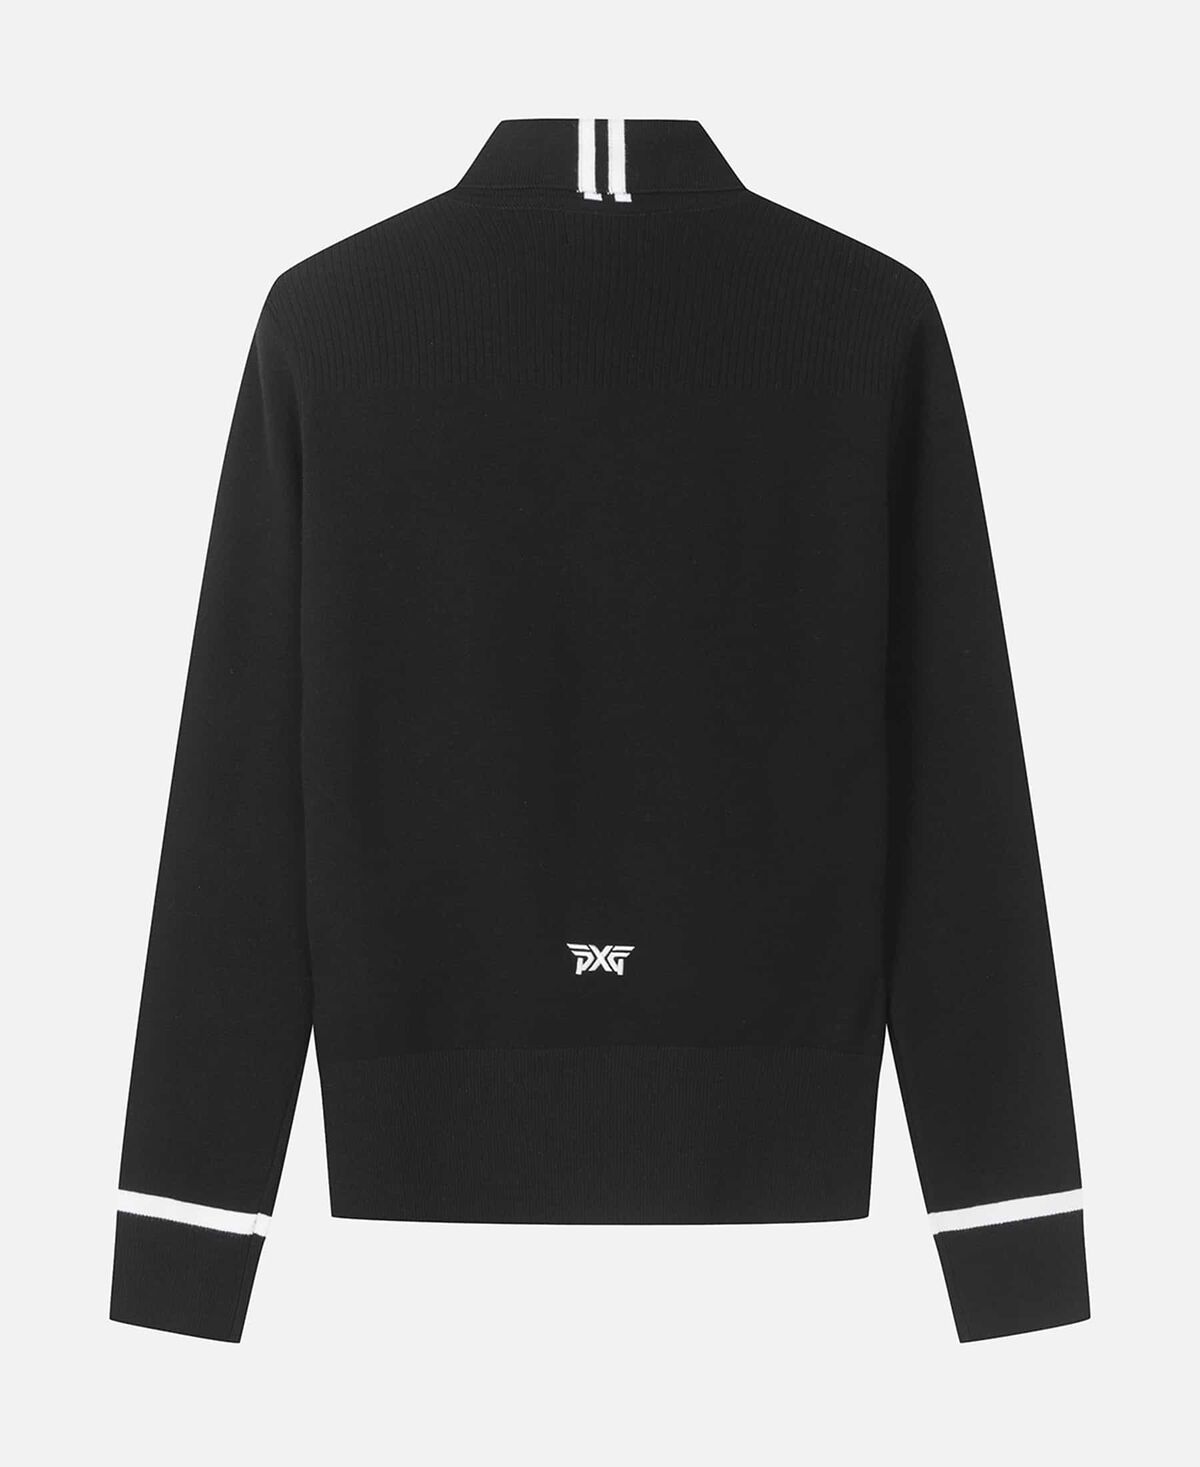 FAカラーネックセーター - ブラック 